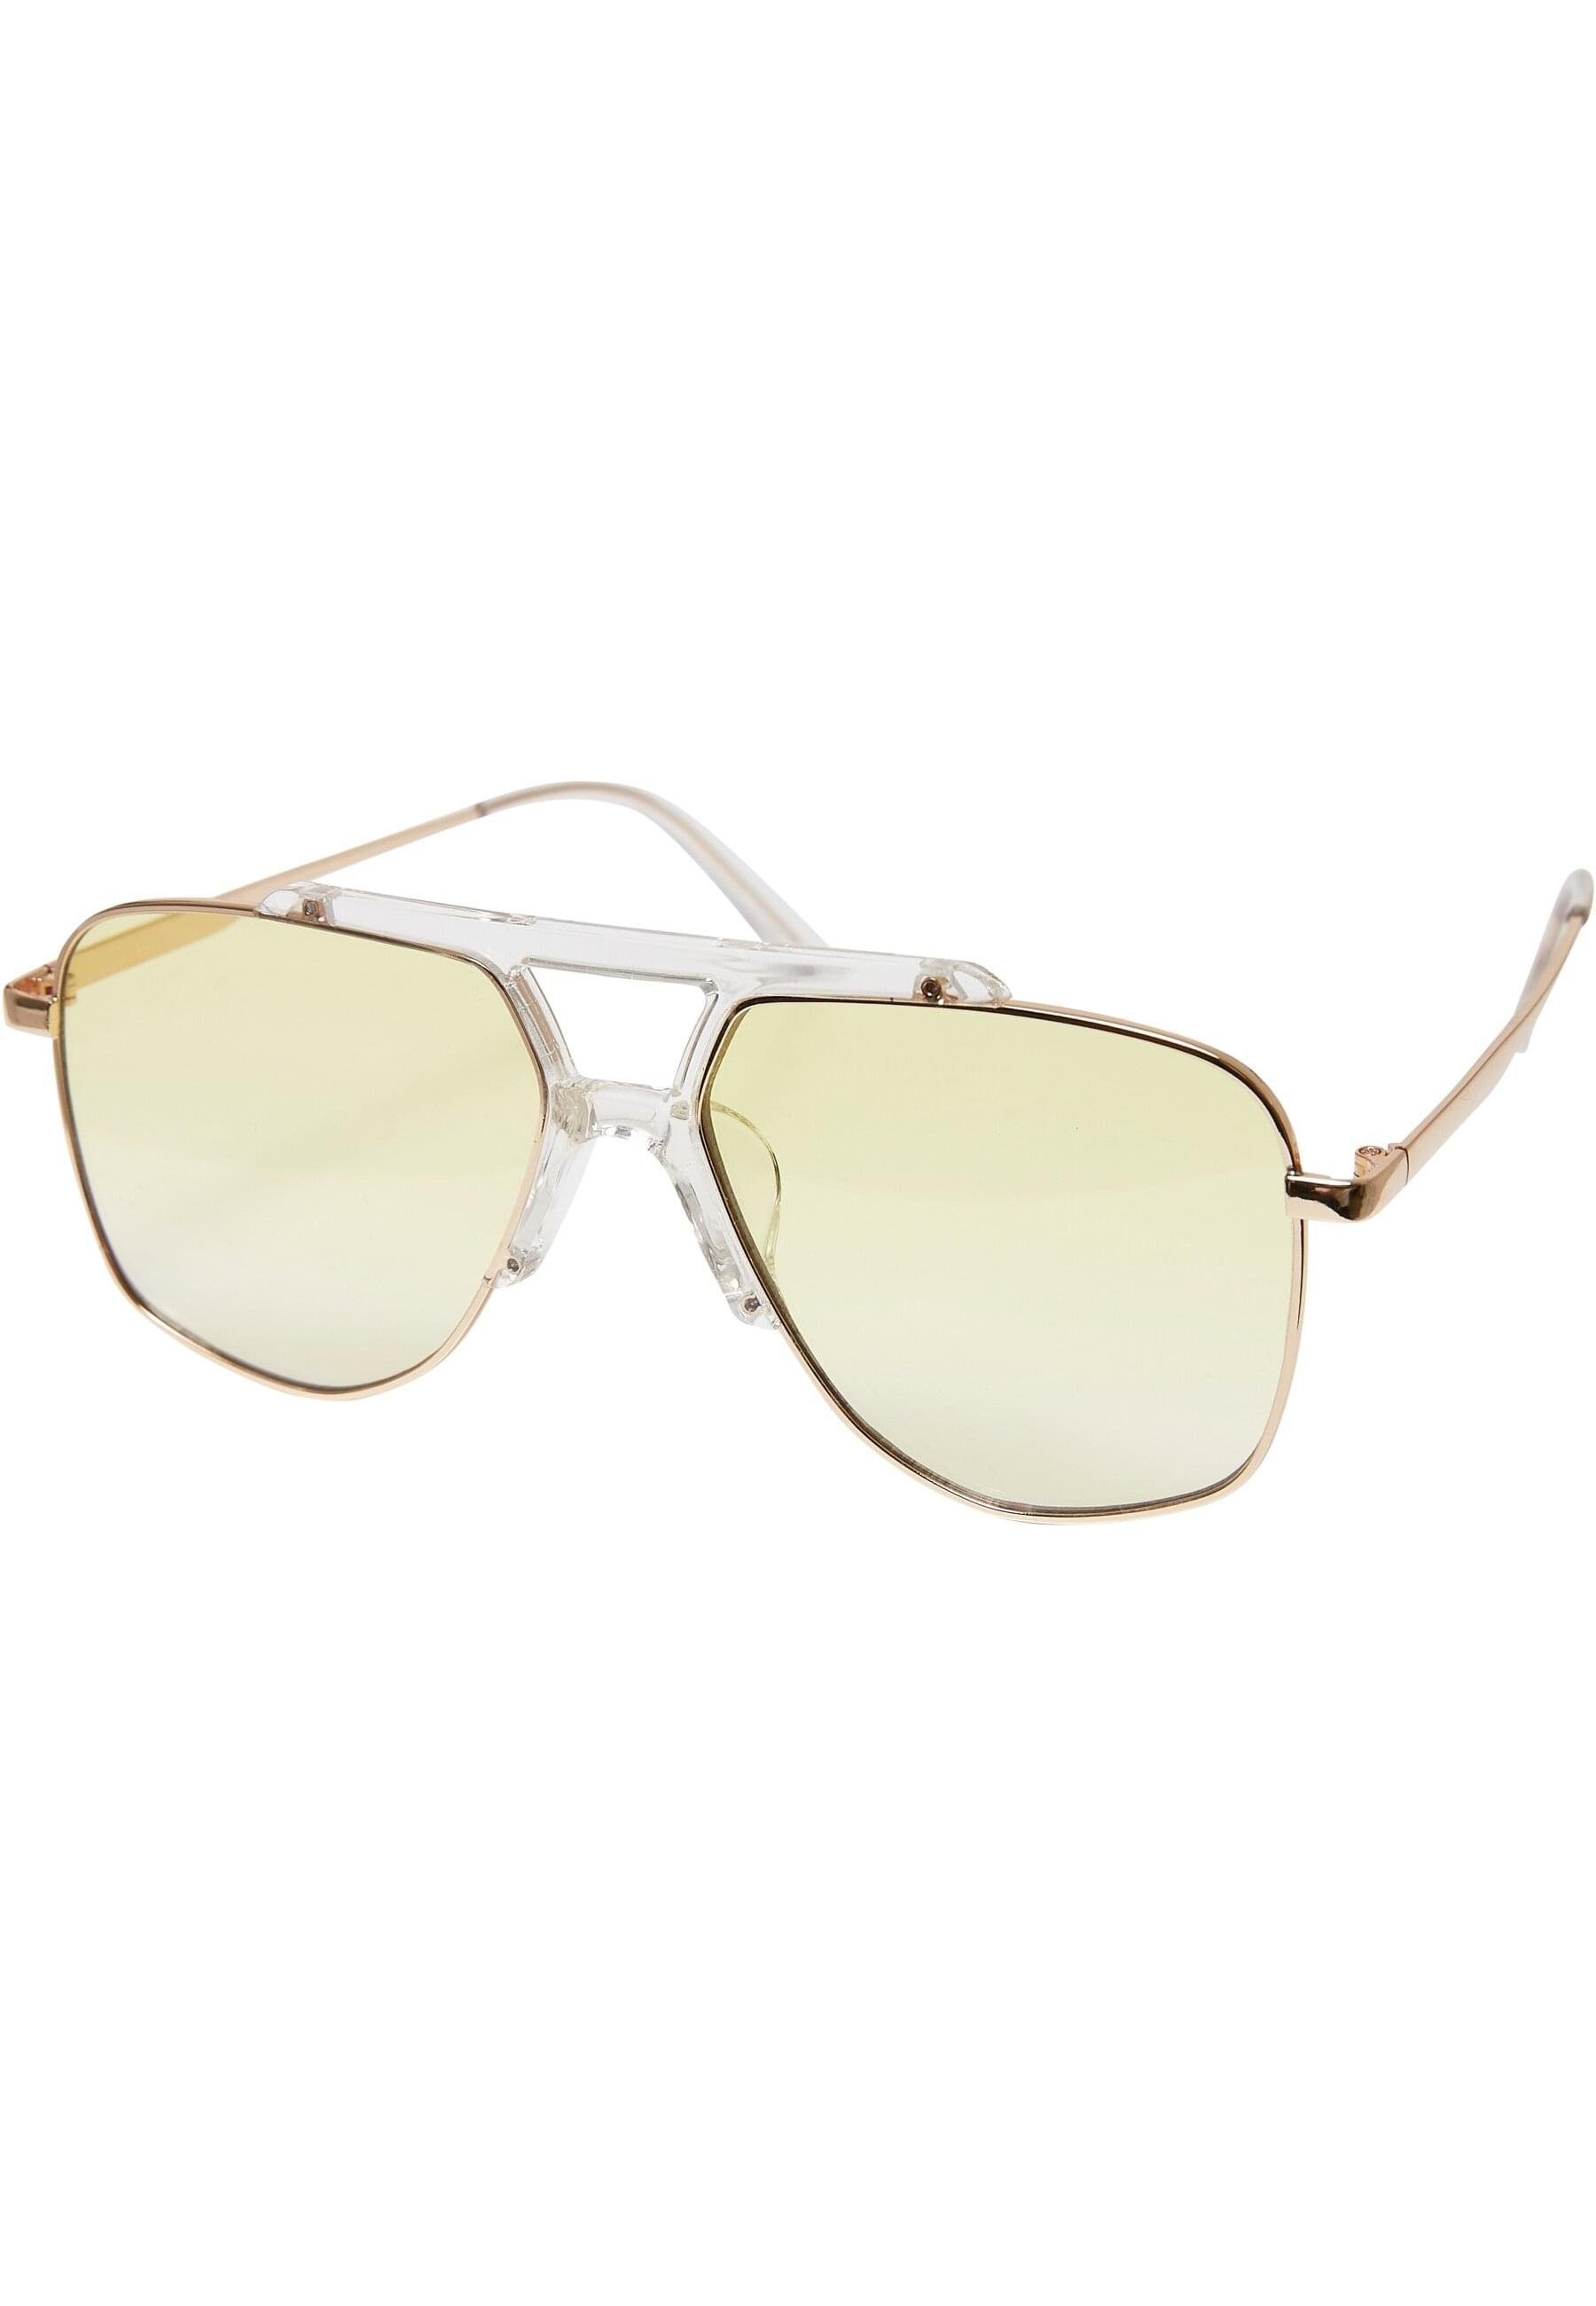 URBAN CLASSICS Sonnenbrille Unisex Sunglasses Saint transparent/gold Tropez